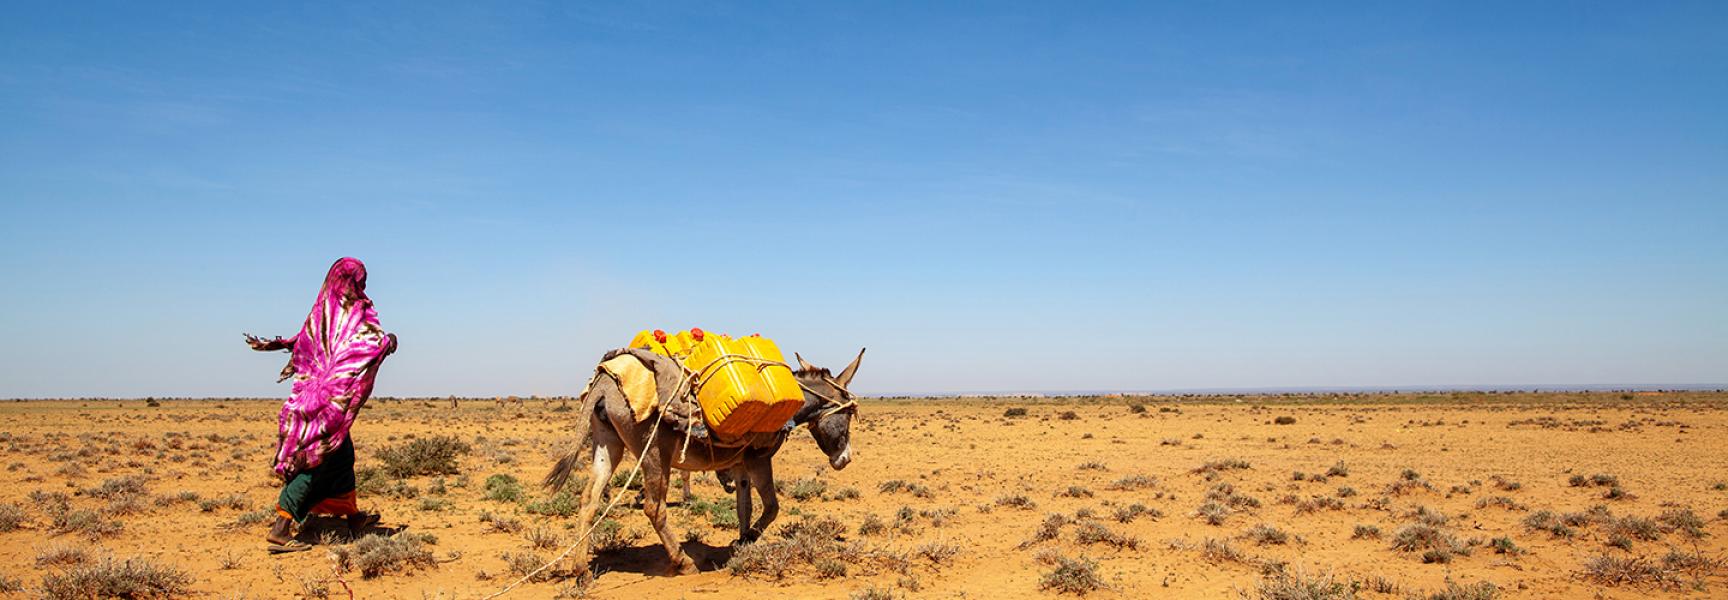 Mujer caminando con un burro en el desierto